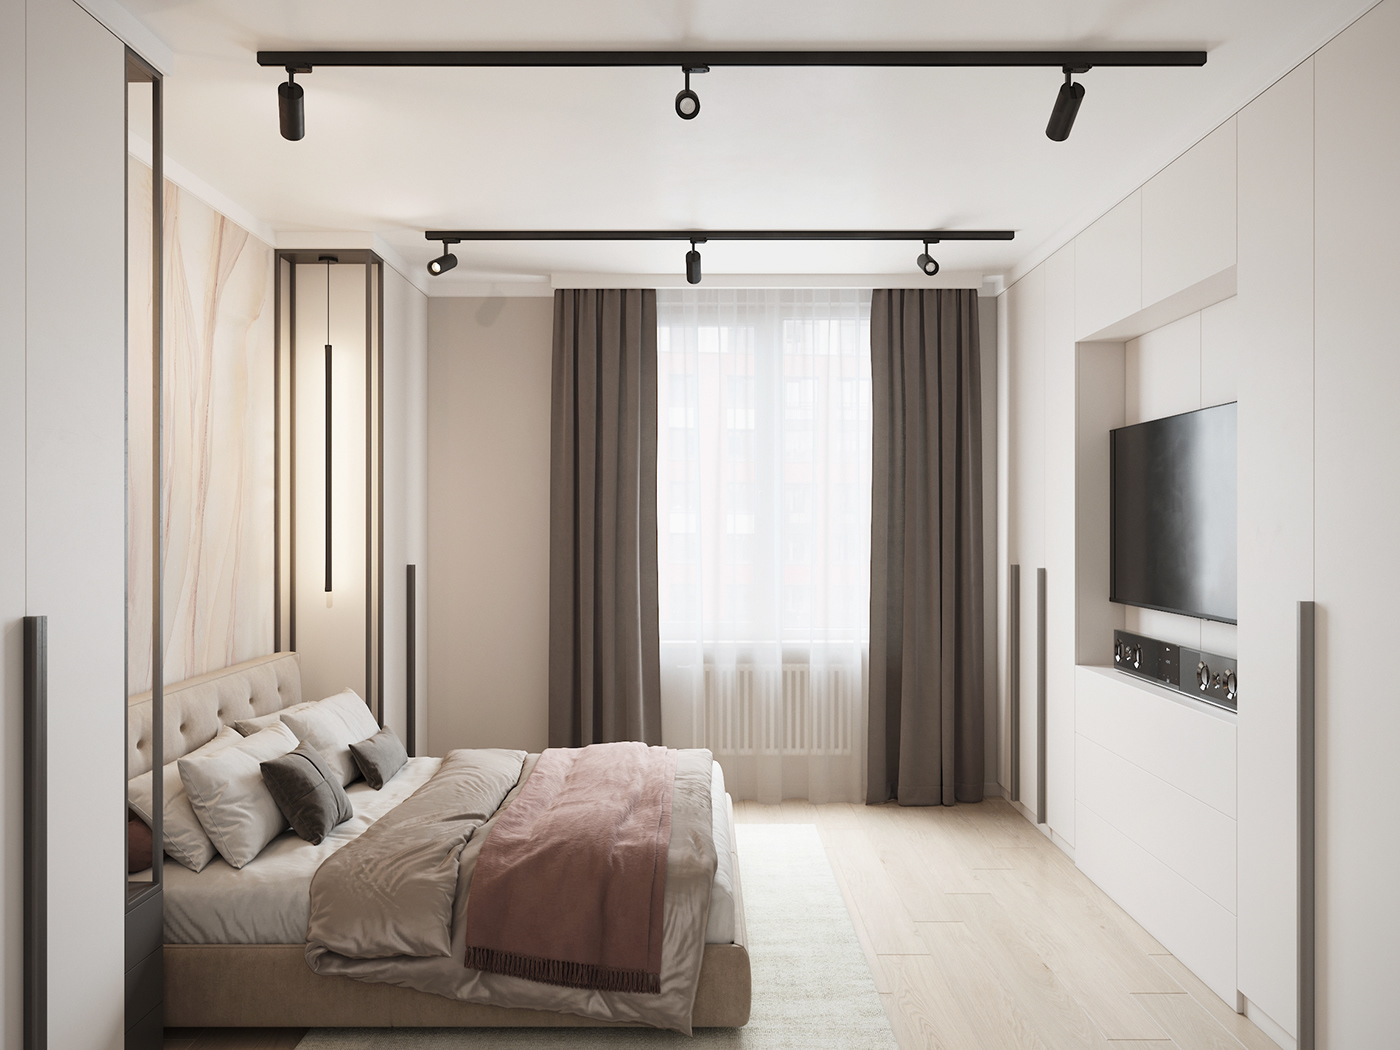 3D 3ds max architecture bedroom corona Interior interior design  Render visualization